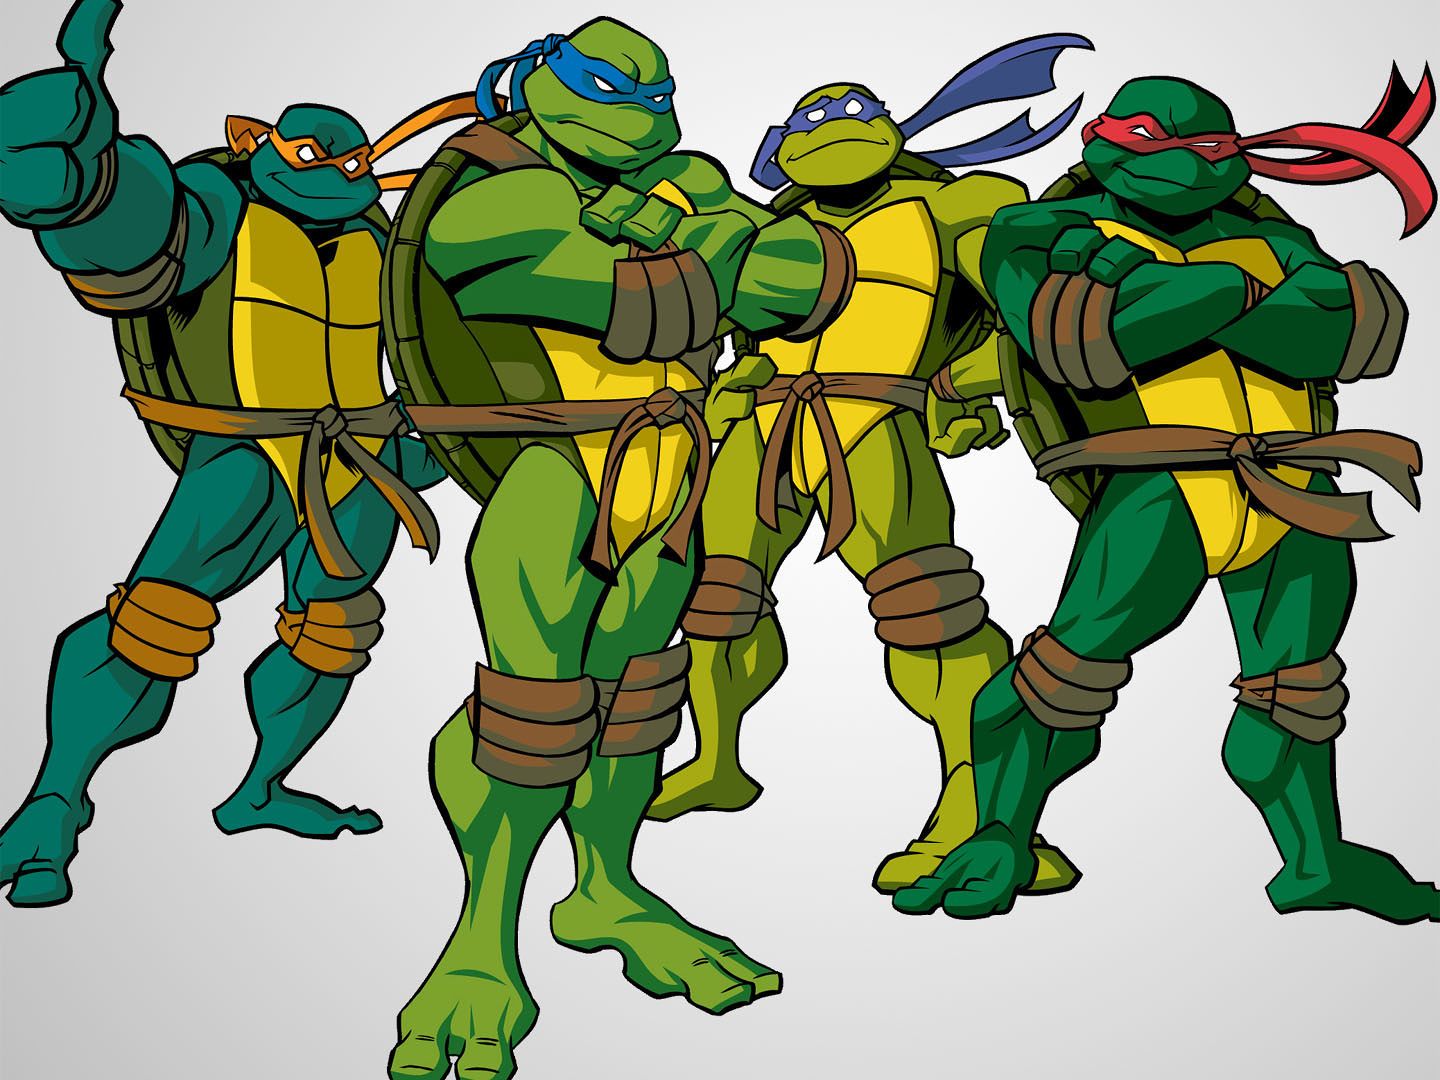 Teenage Mutant Ninja Turtles wallpaper, Cartoon, HQ Teenage Mutant Ninja Turtles pictureK Wallpaper 2019